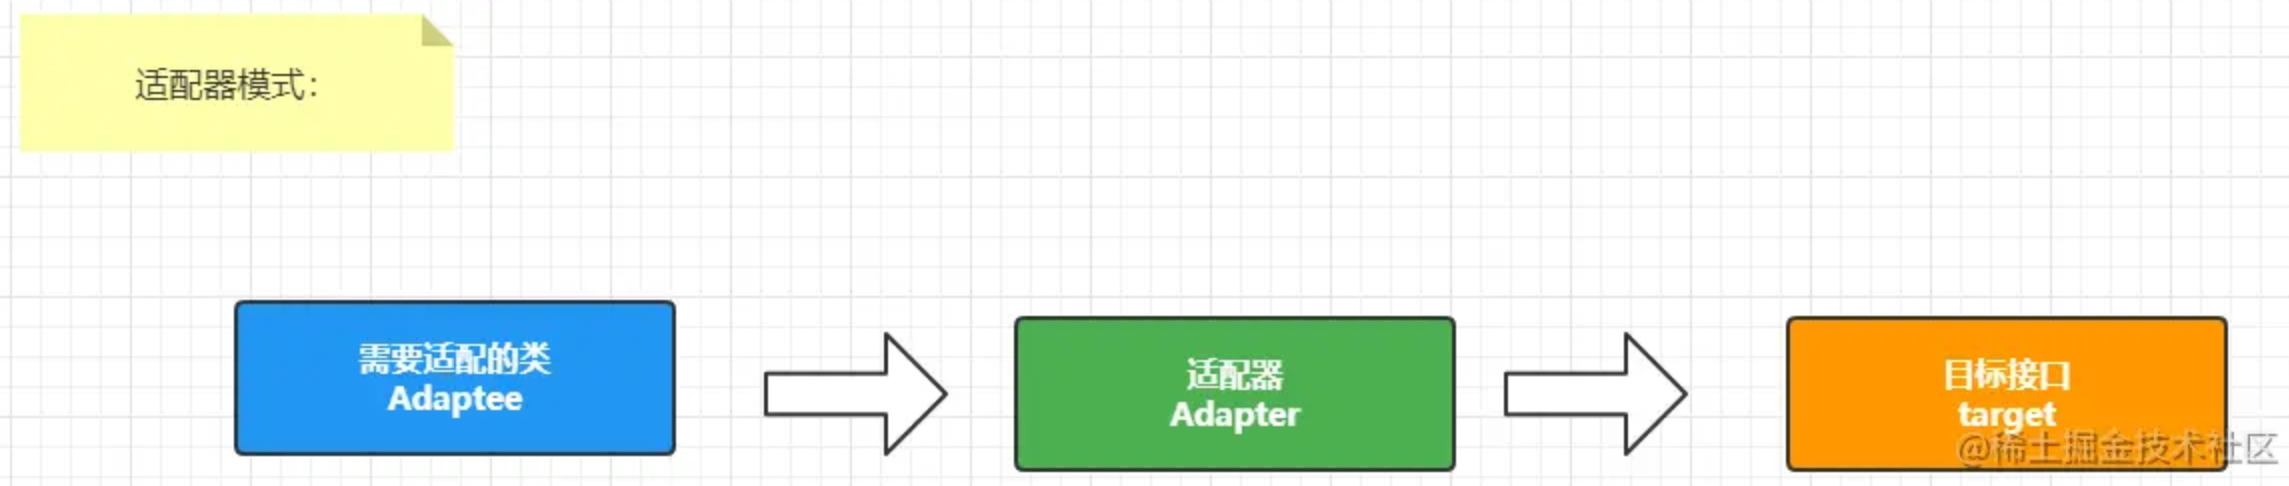 设计模式-Adapter适配器模式和Decorator装饰者模式 